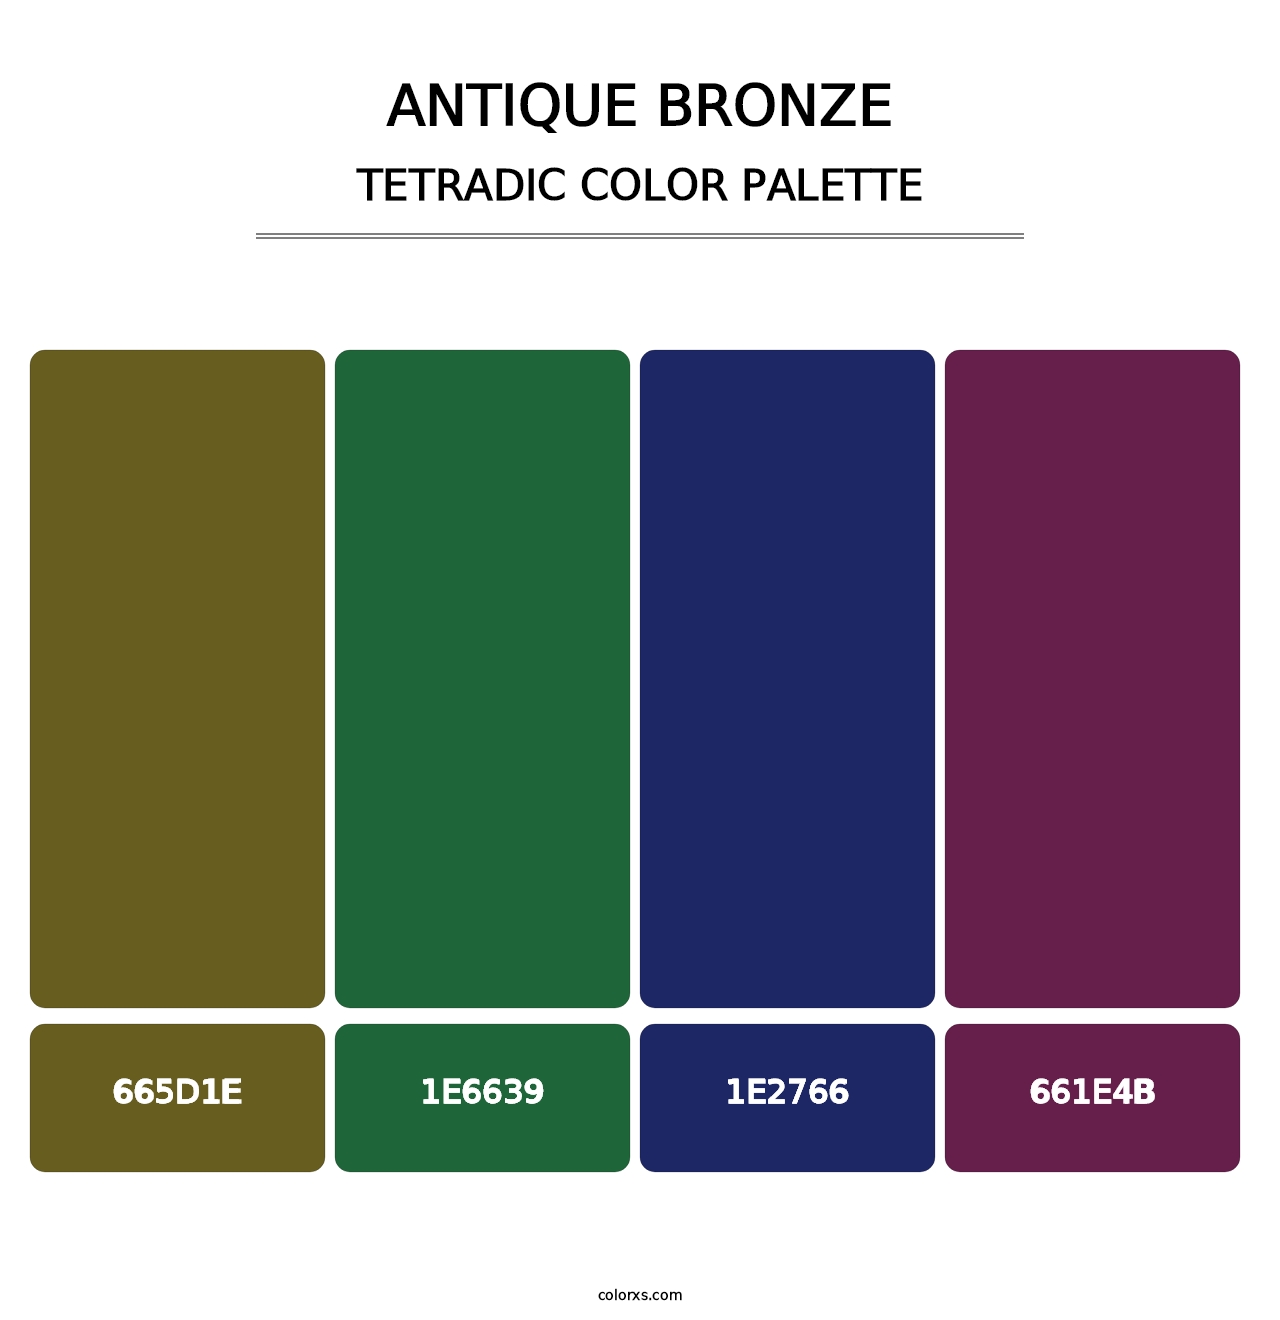 Antique Bronze - Tetradic Color Palette